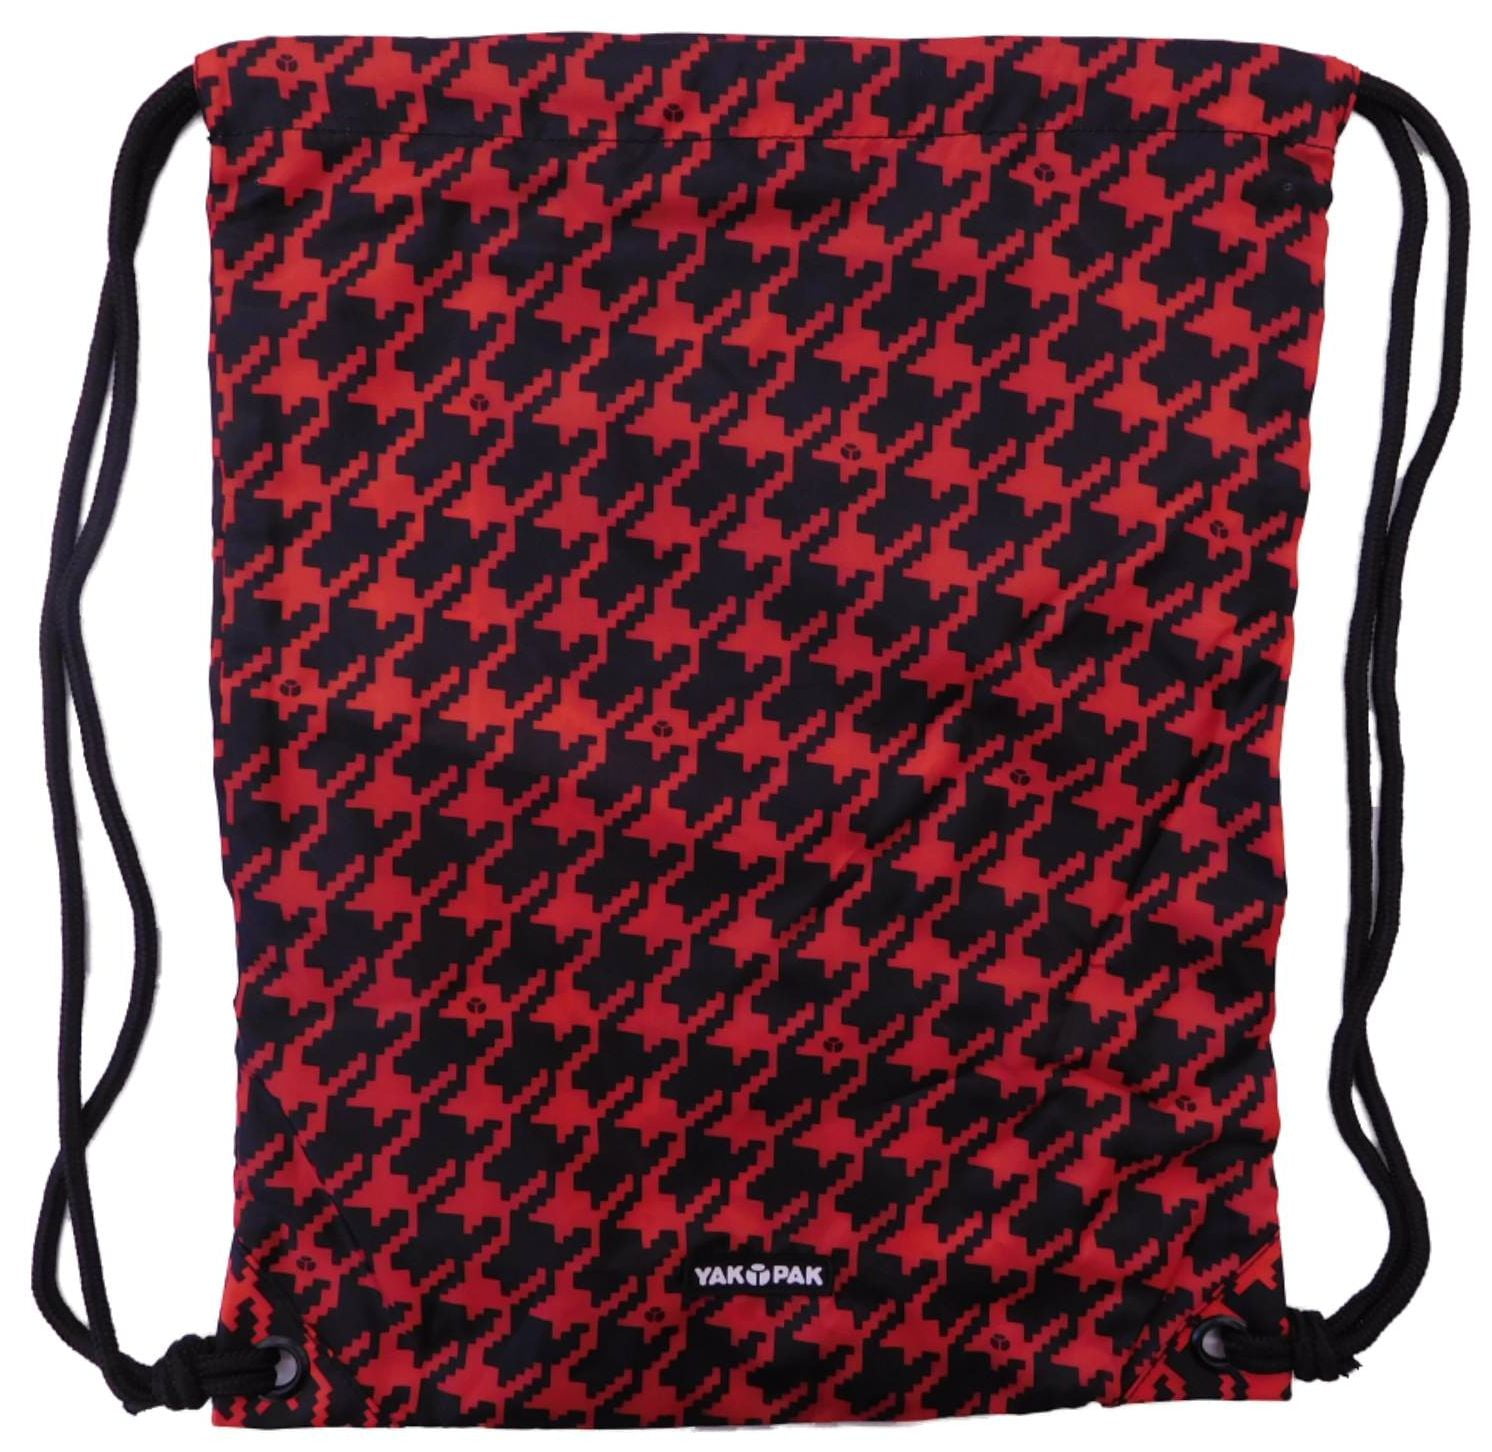 Carrysack Sack Red & Black Houndstooth Cinch Bag Tote - Walmart.com